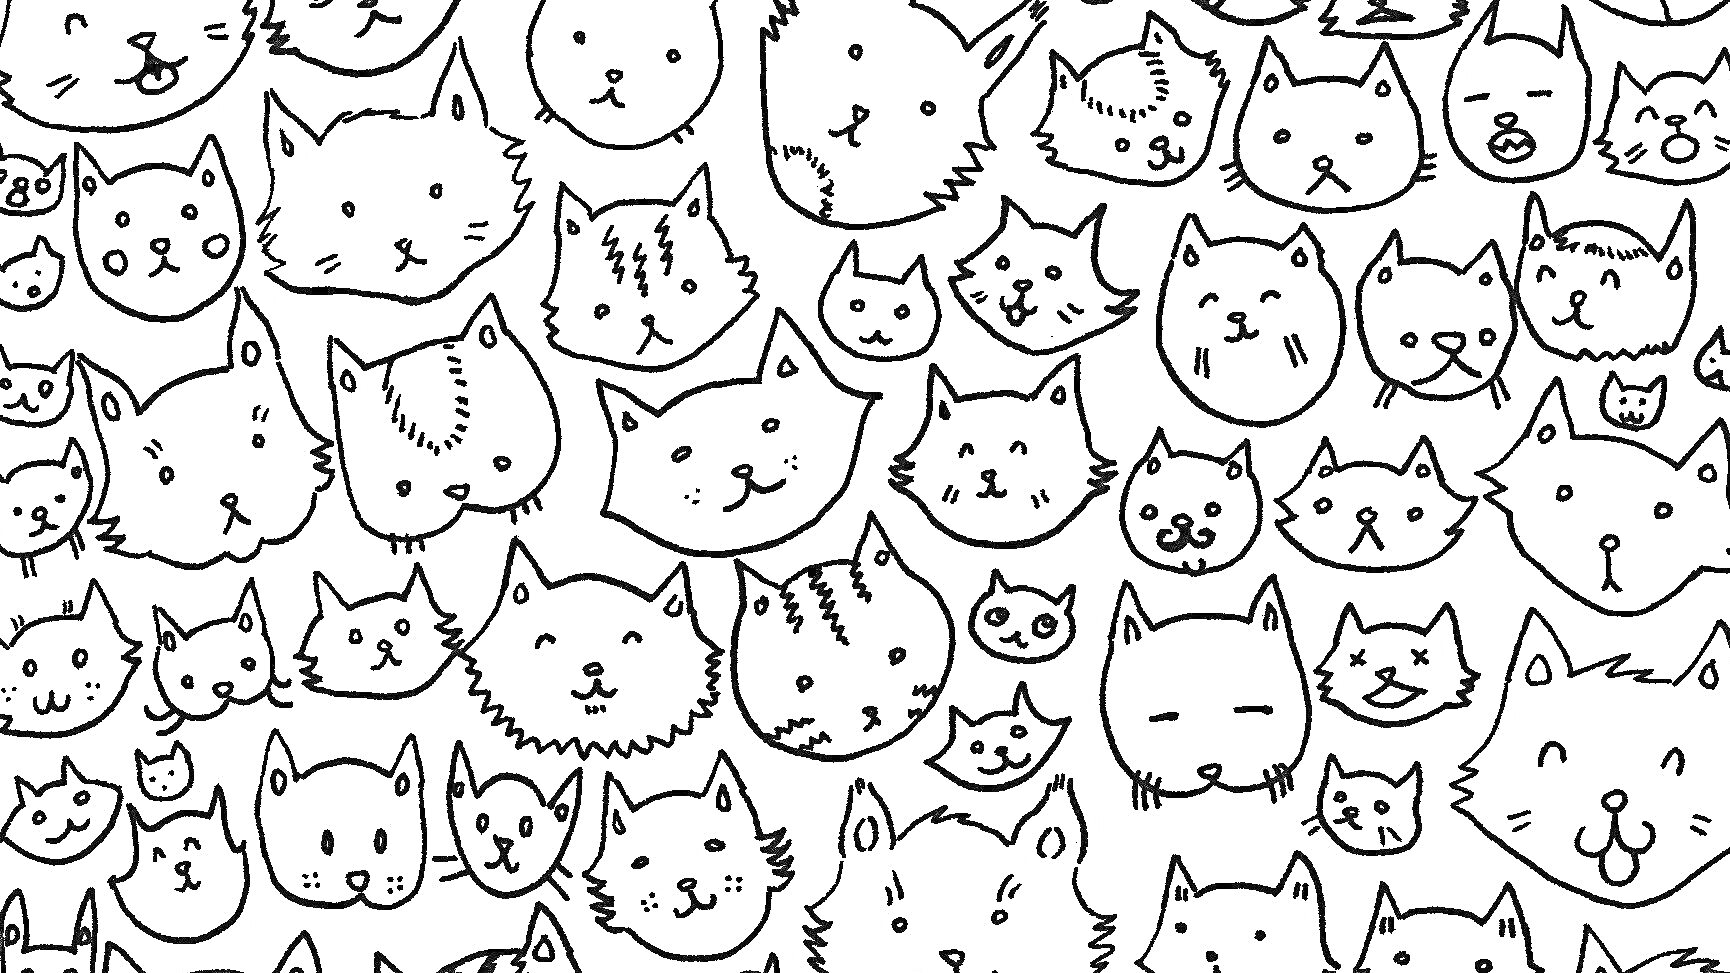 Раскраска Лист с различными мордочками котов. Включает разные выражения лиц и формы ушей.